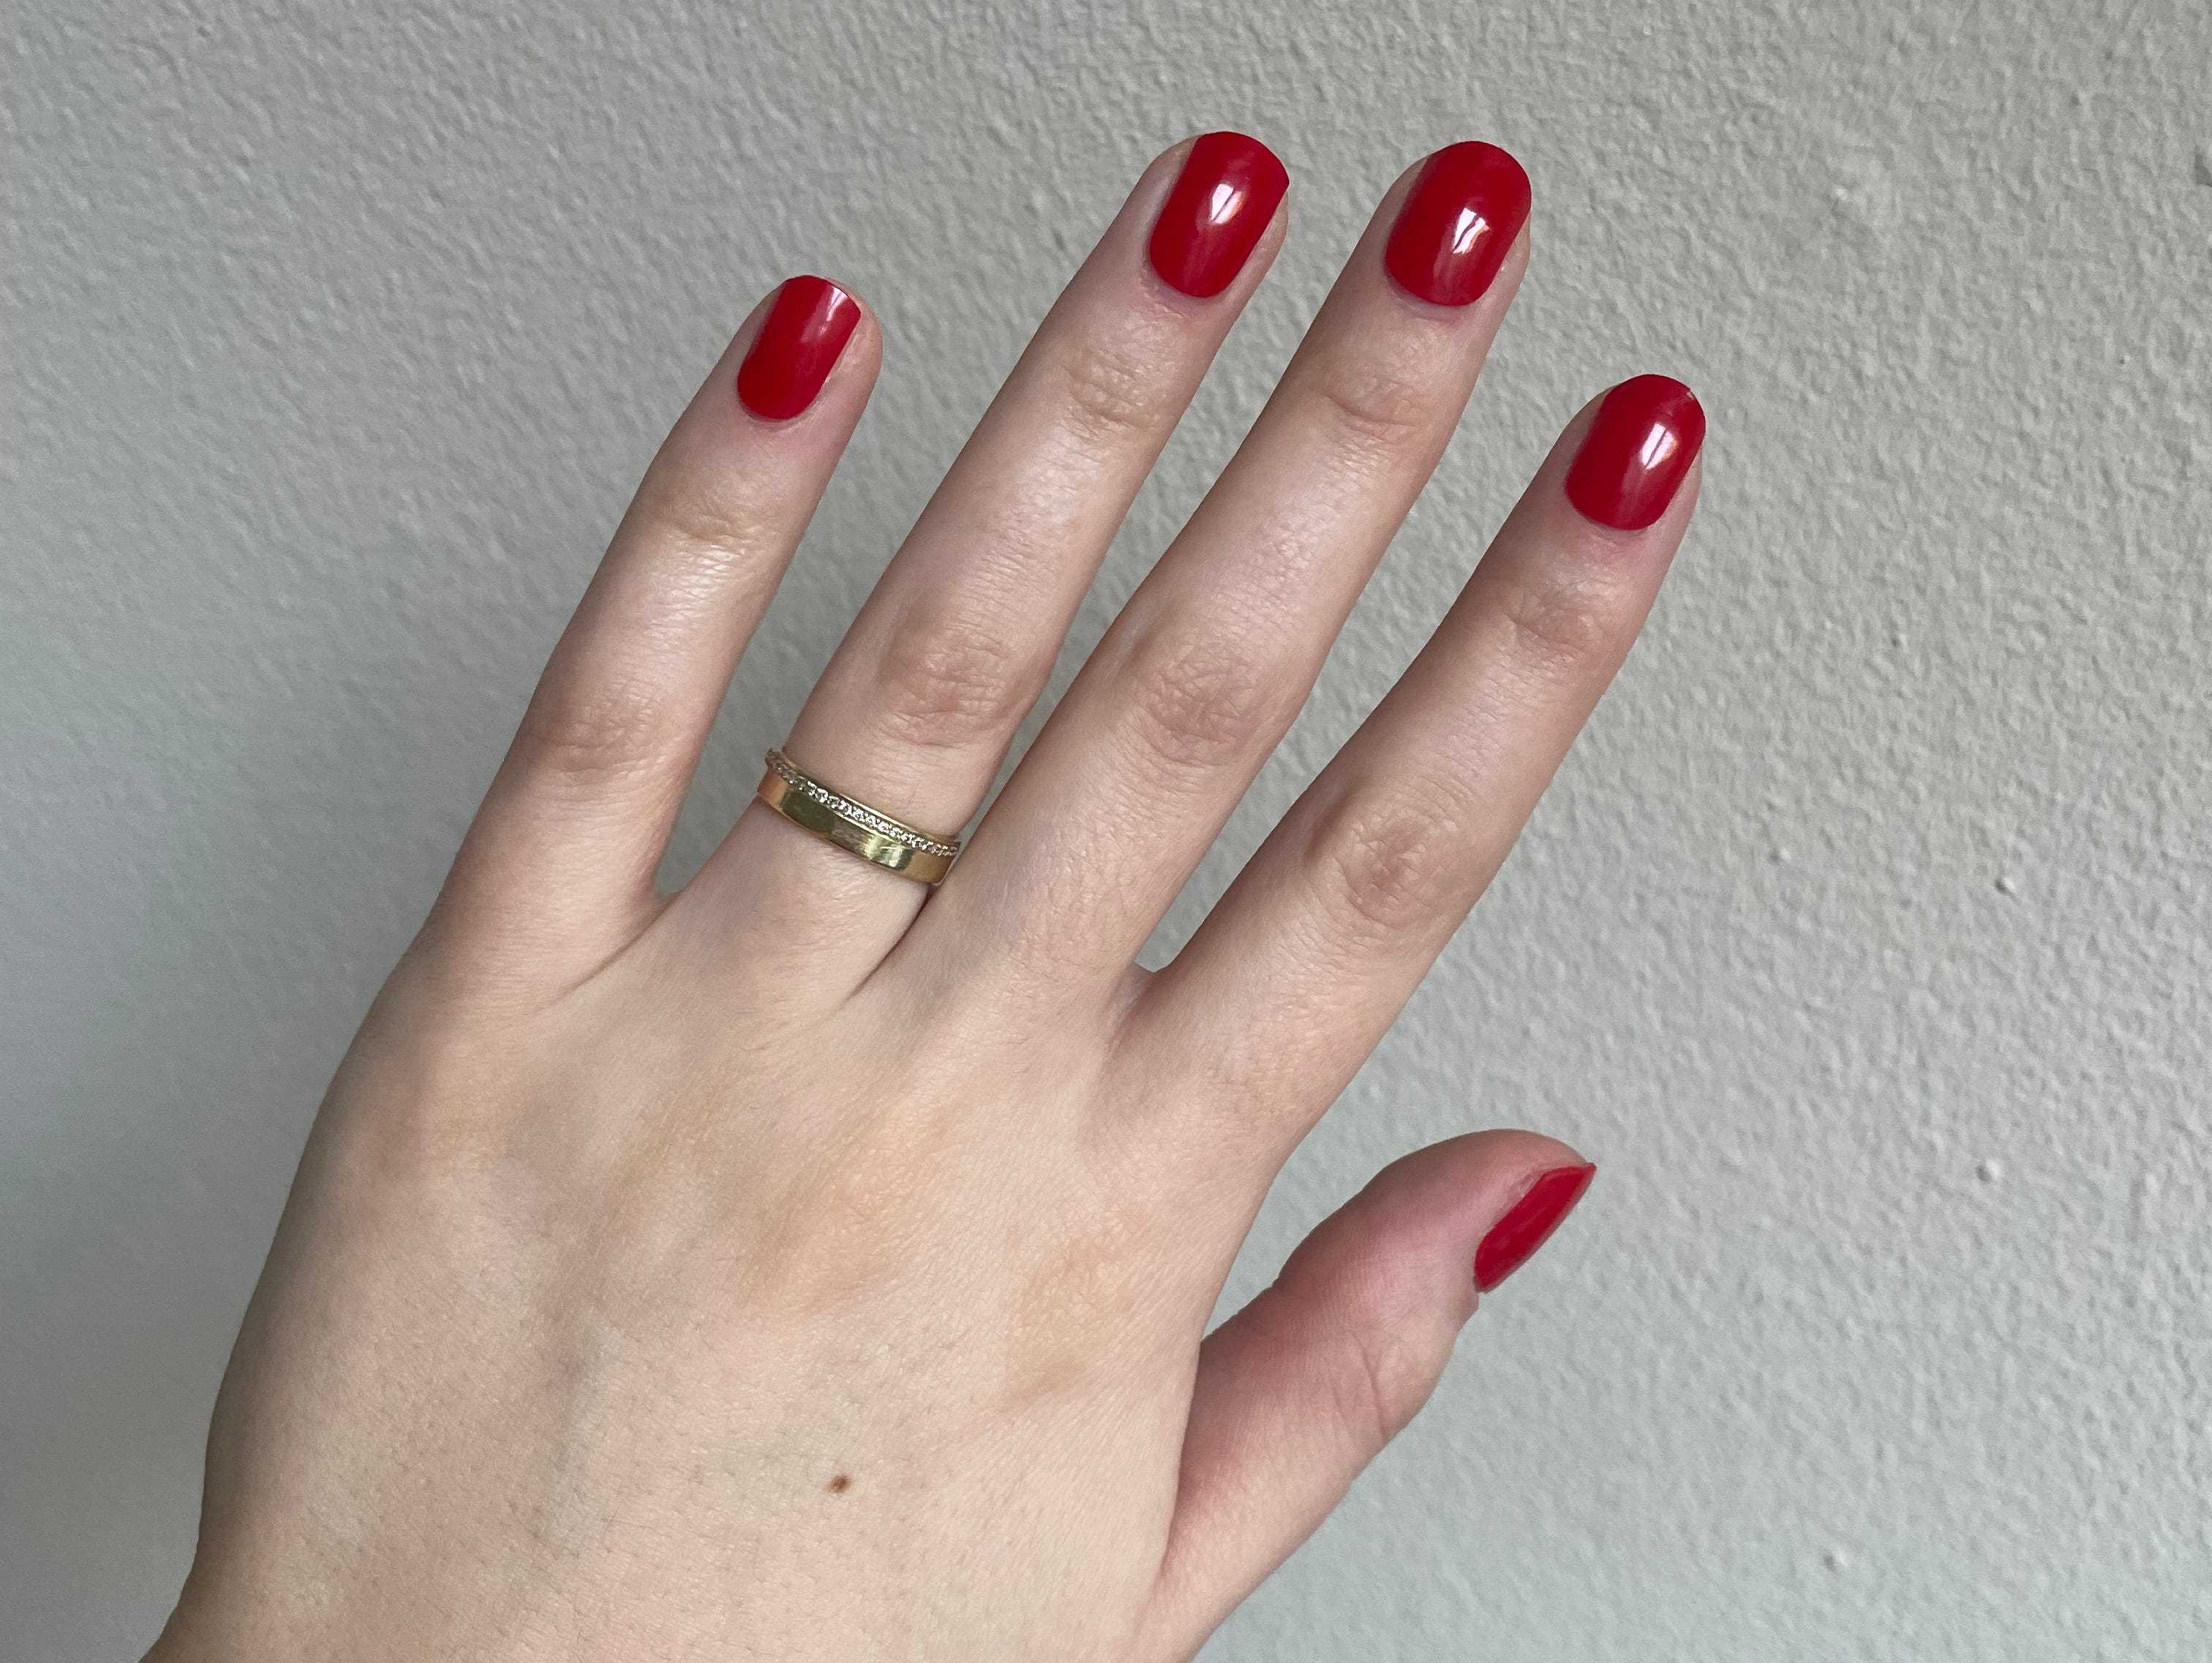 Rote Nagelaufkleber eines Handmodells von PaintLab.